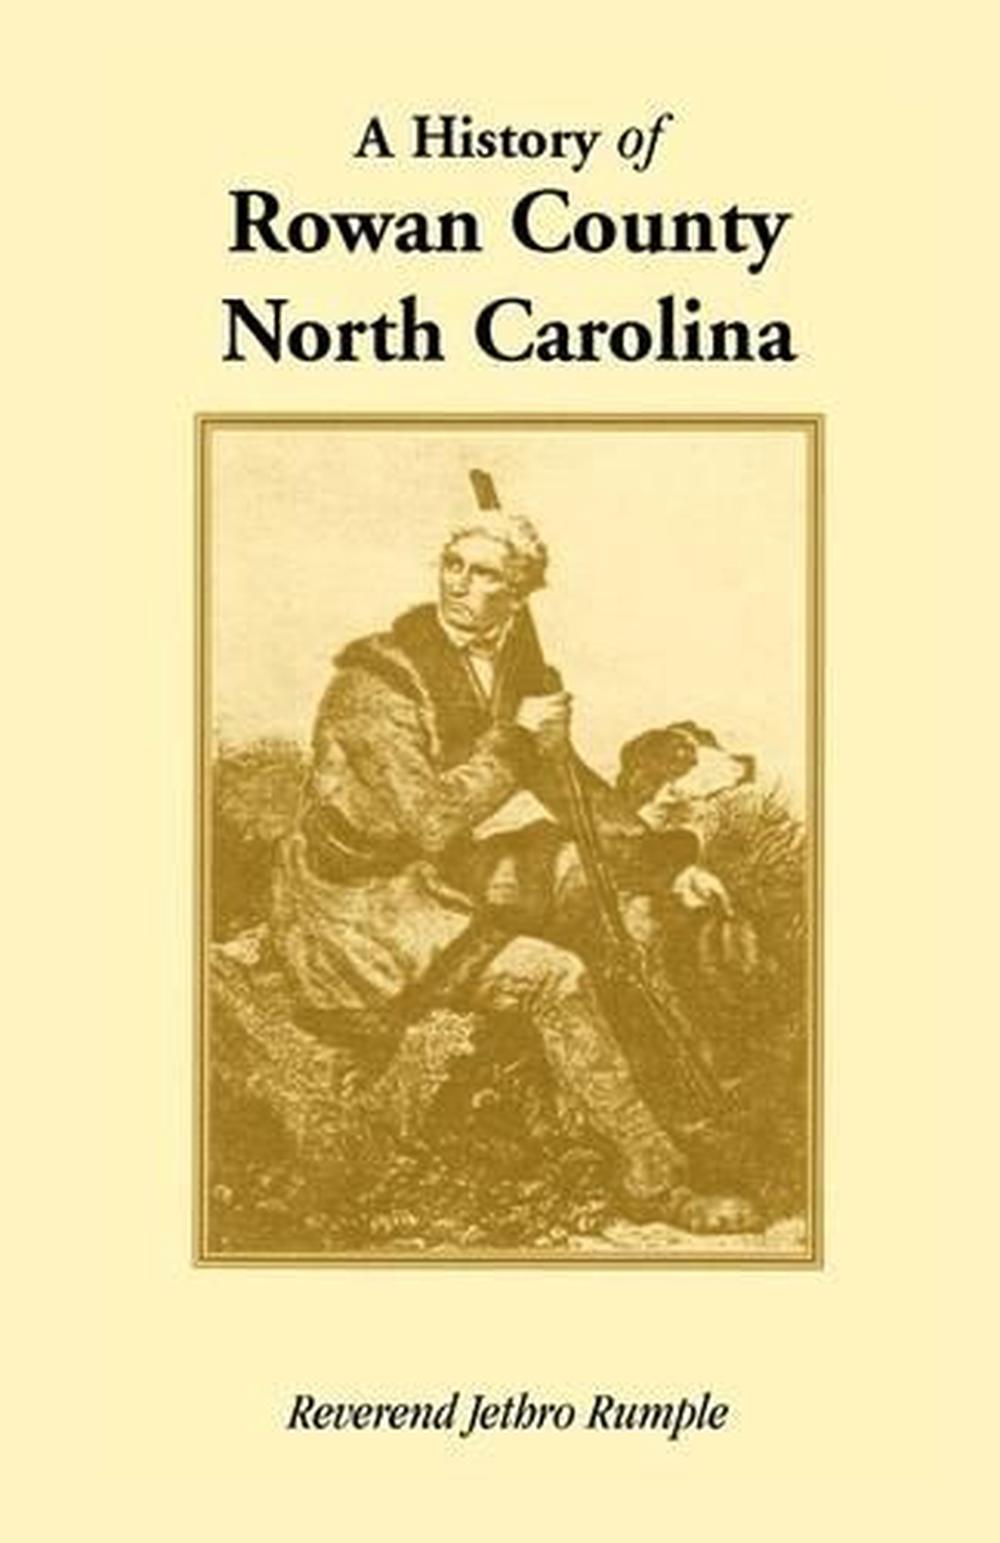 History of Rowan County, North Carolina by Reverend Jethro Rumple